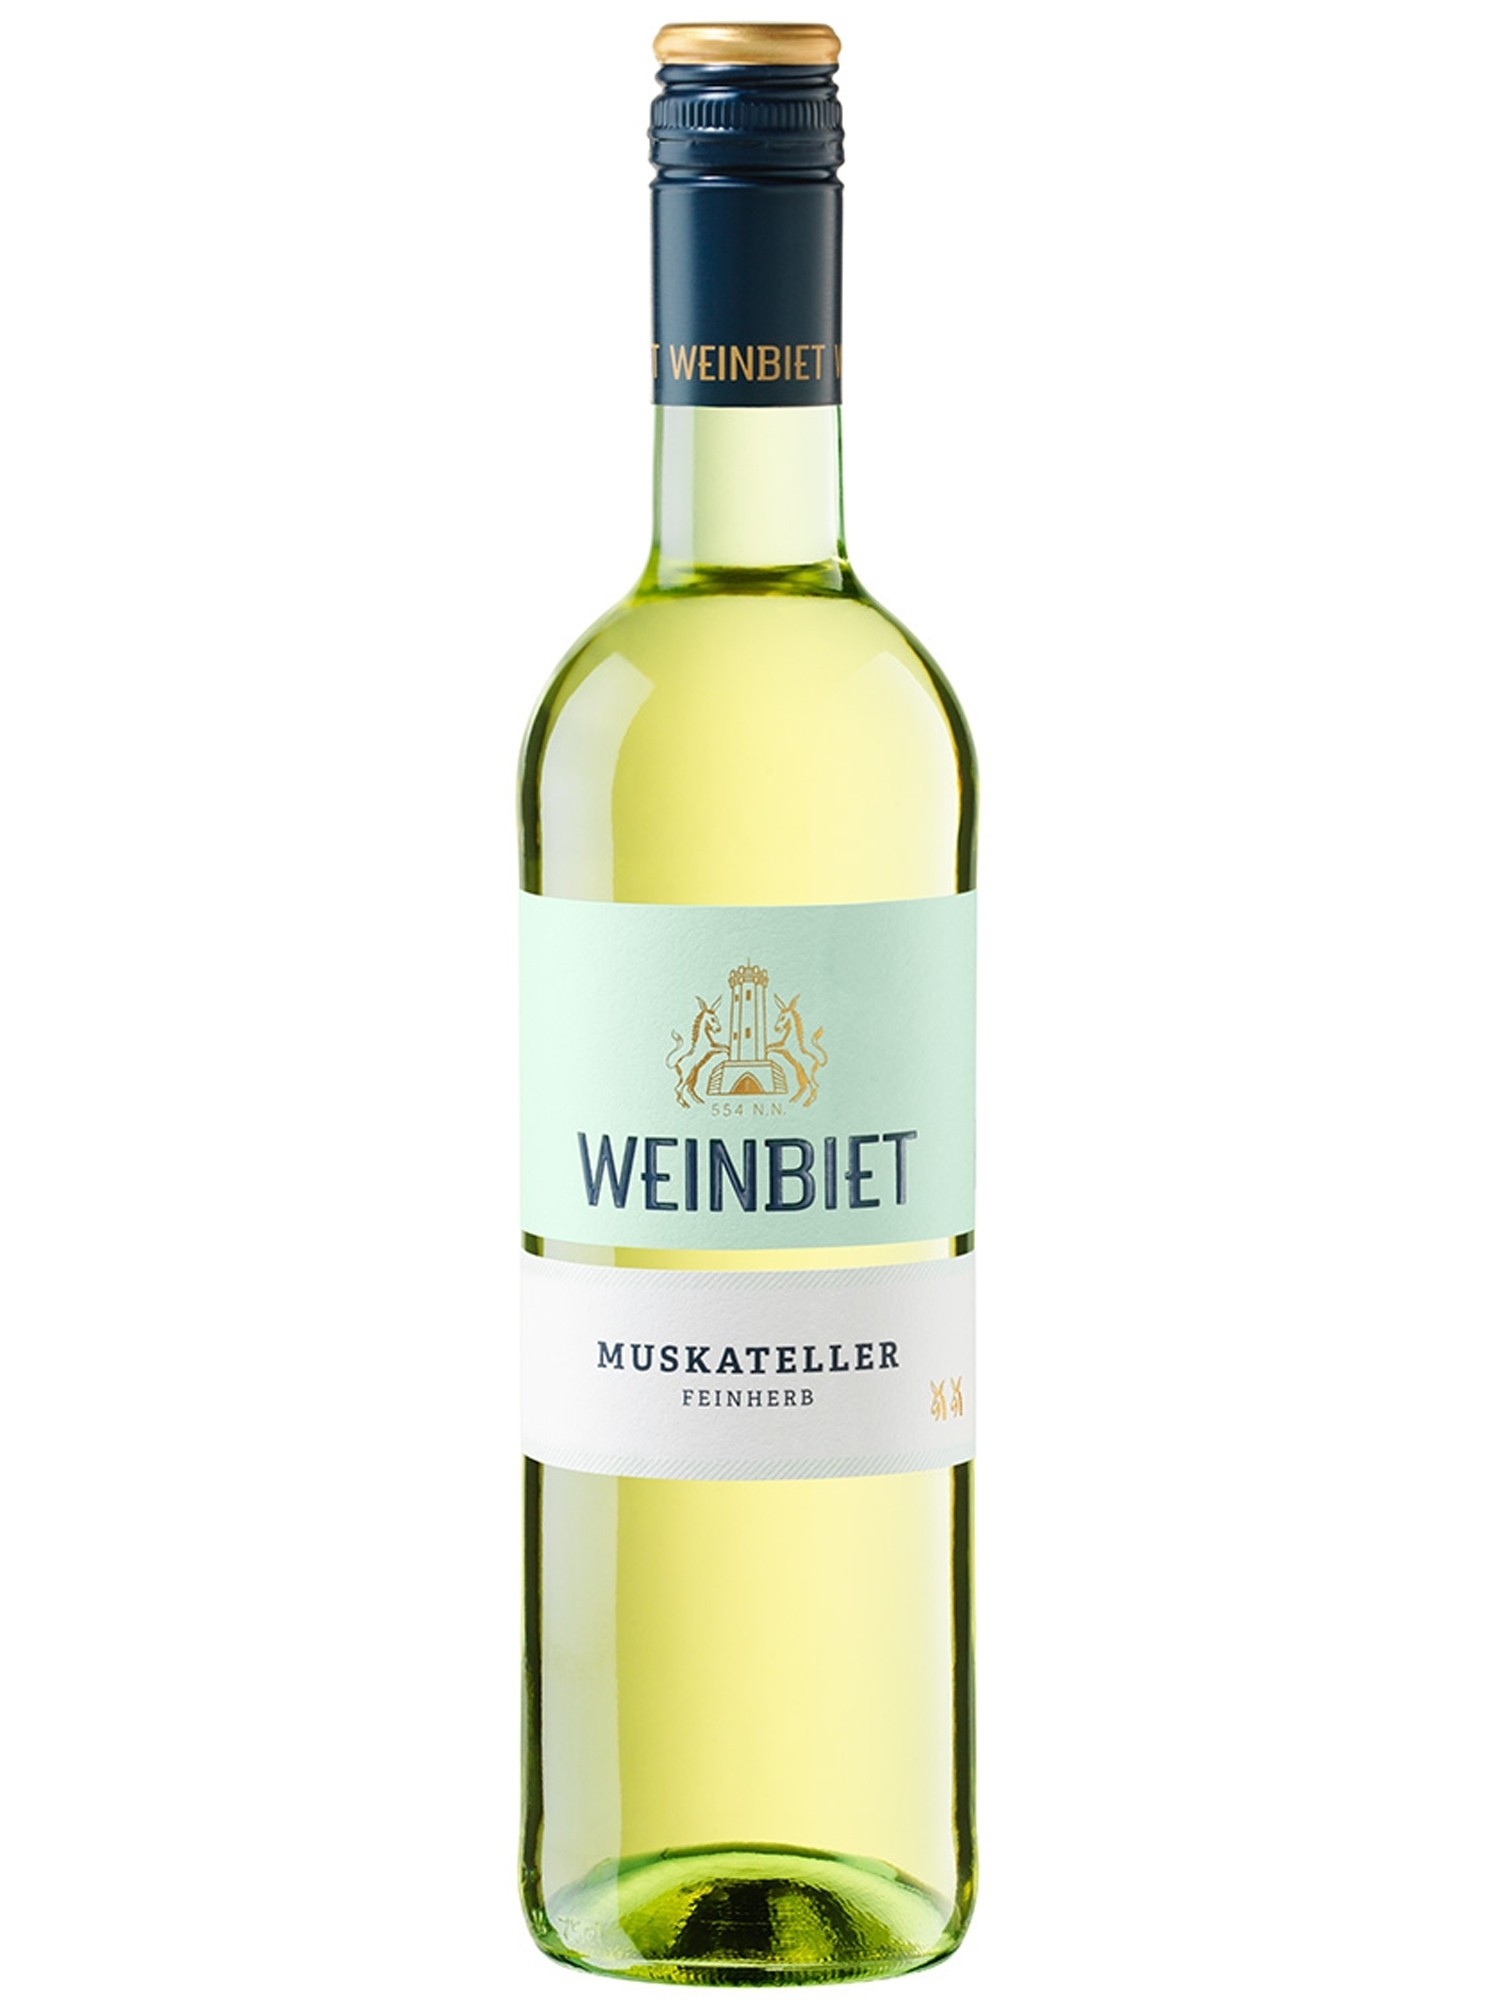 Muskateller feinherb - Weinbiet | Pfalz Wein Online